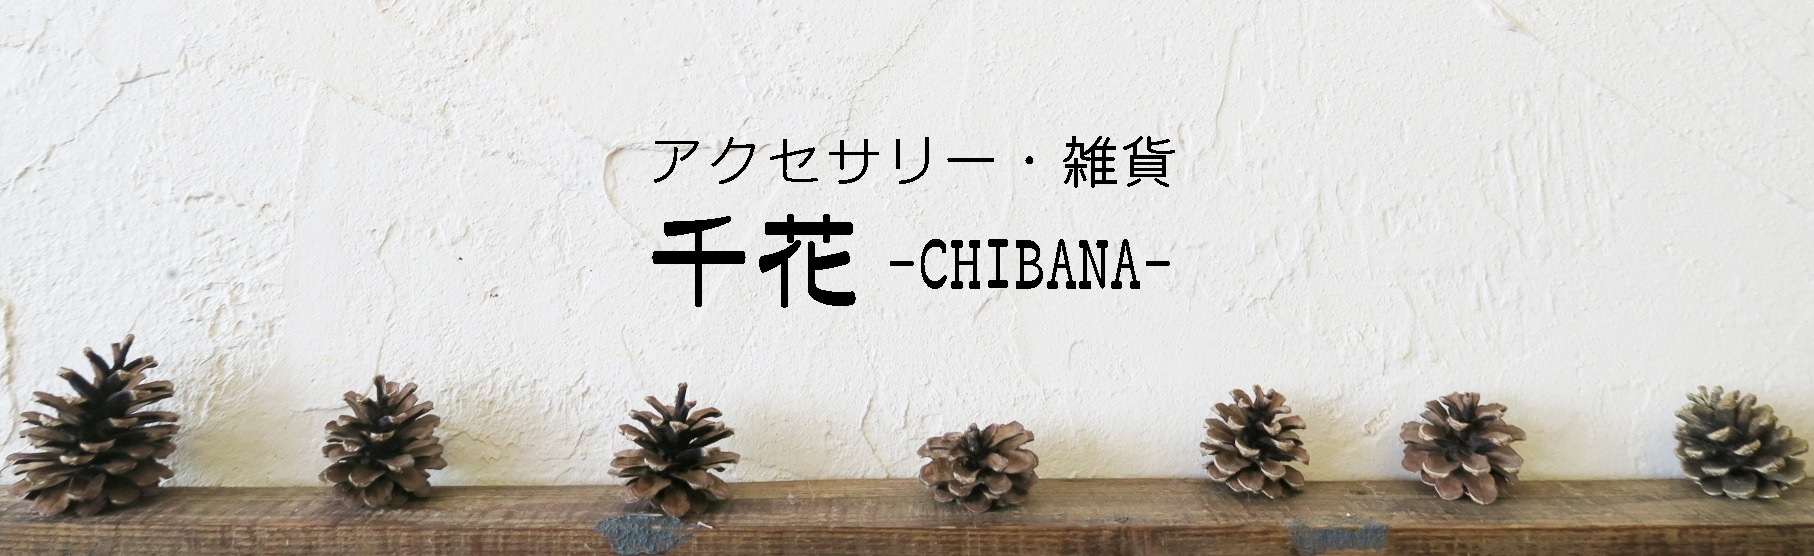 千花 -Chibana-【アクセサリーと雑貨の店】